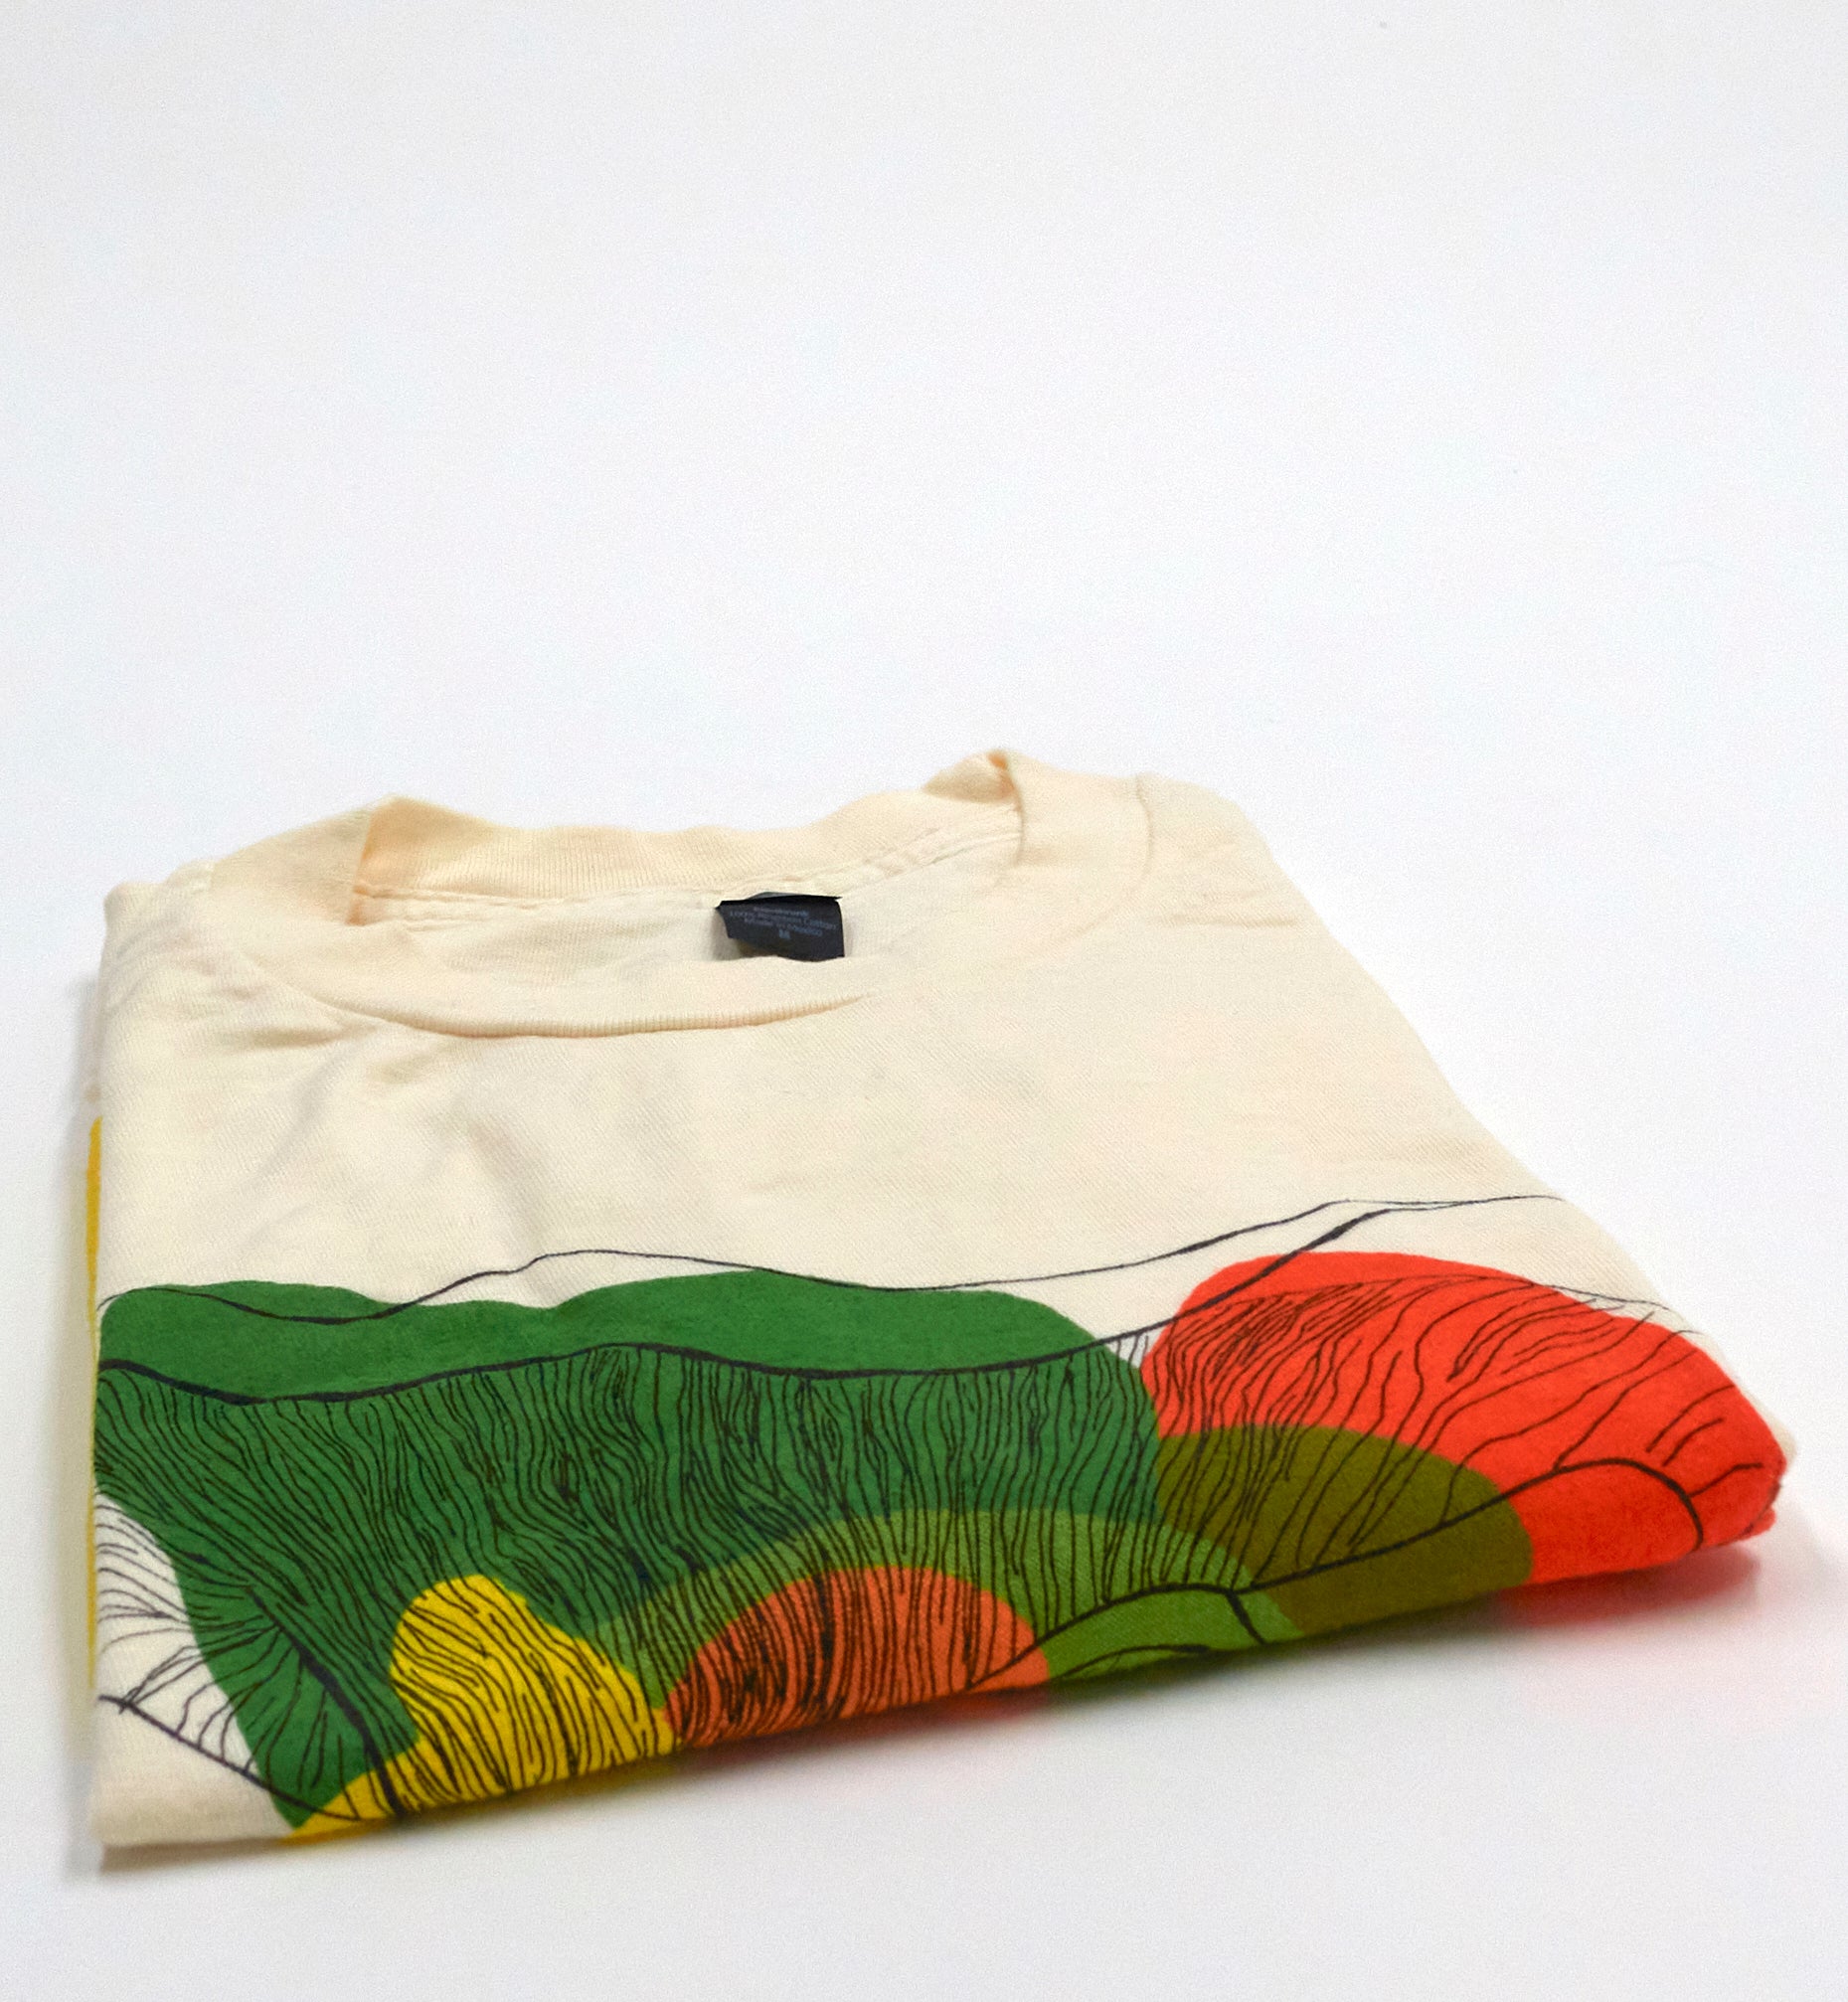 Saintseneca – Floral Tour Shirt Size Medium